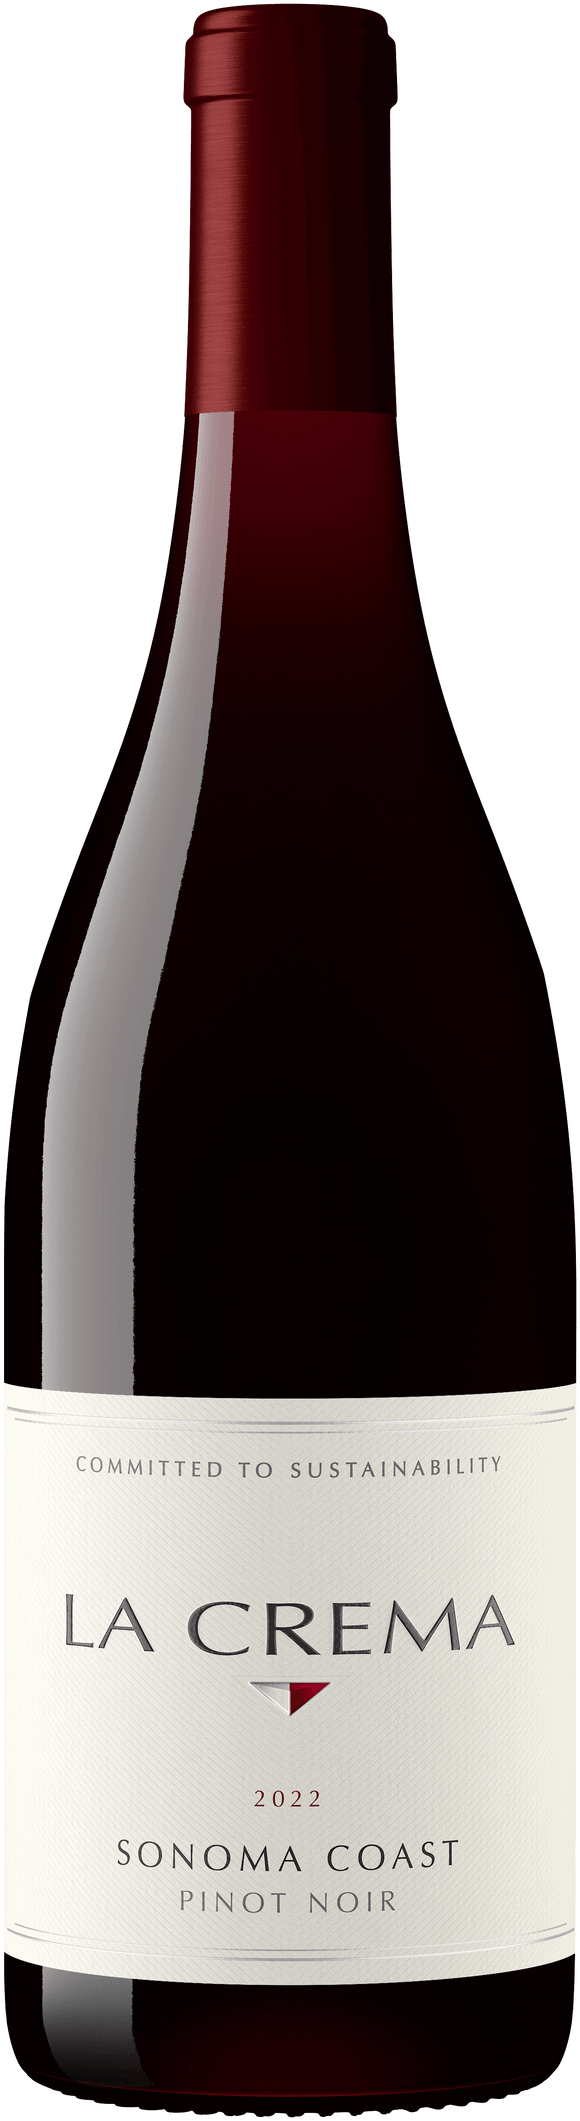 La Crema Sonoma Coast Pinot Noir 2021